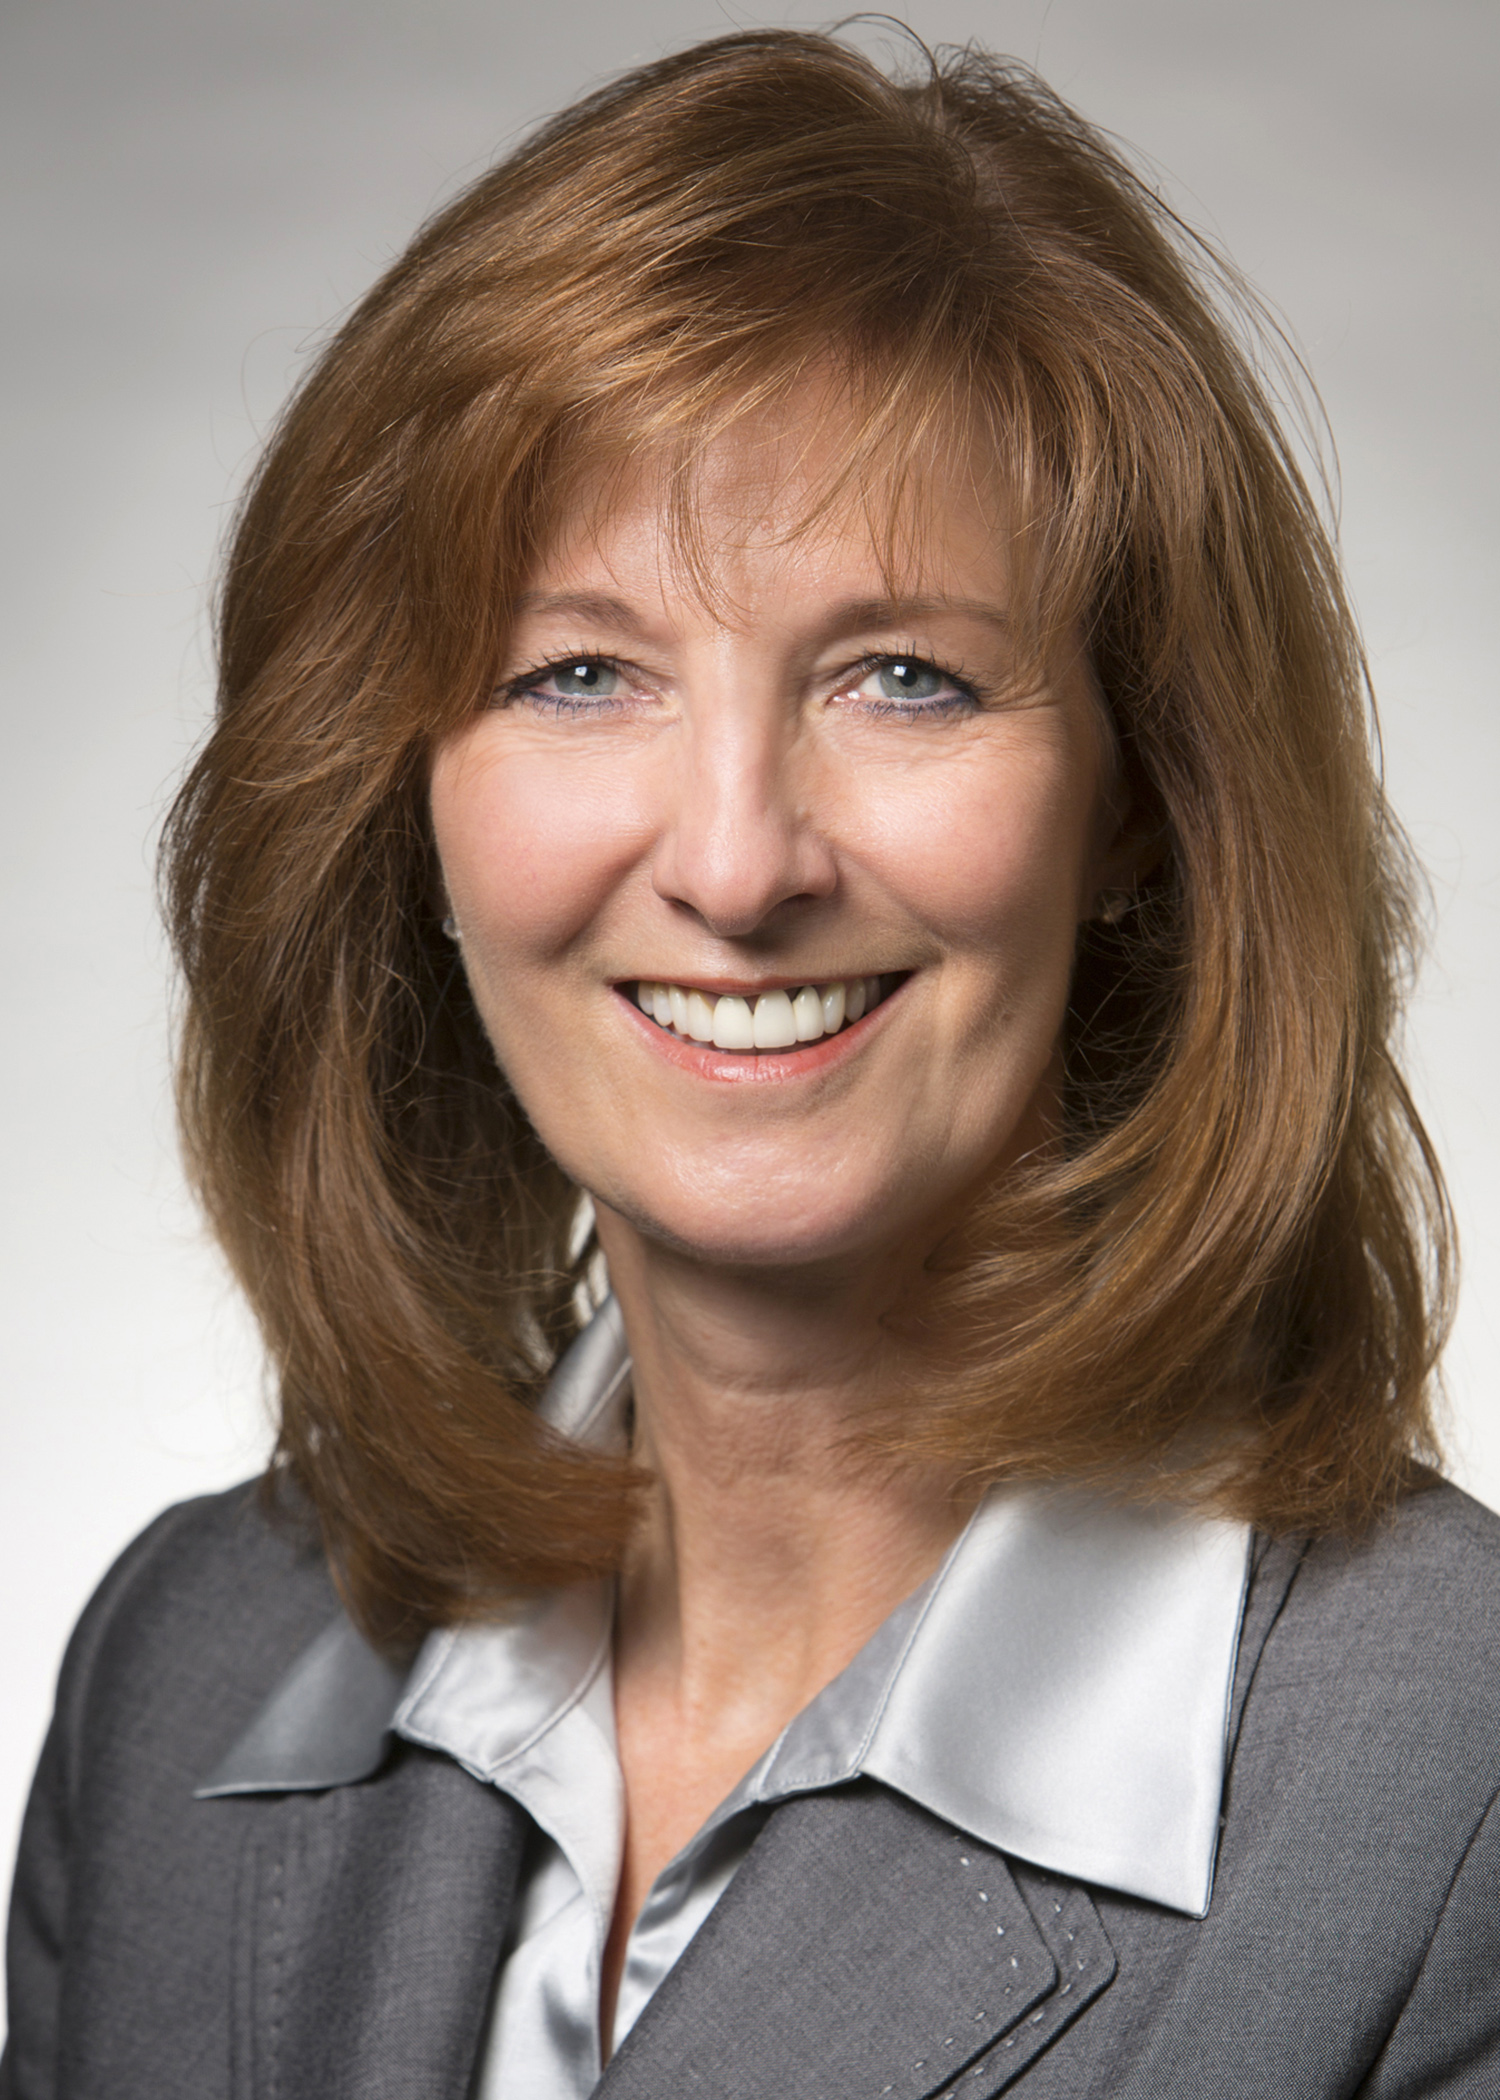 Sandra Massa joins Wilmington Trust's Wealth Advisory team in Delaware as senior private banker.